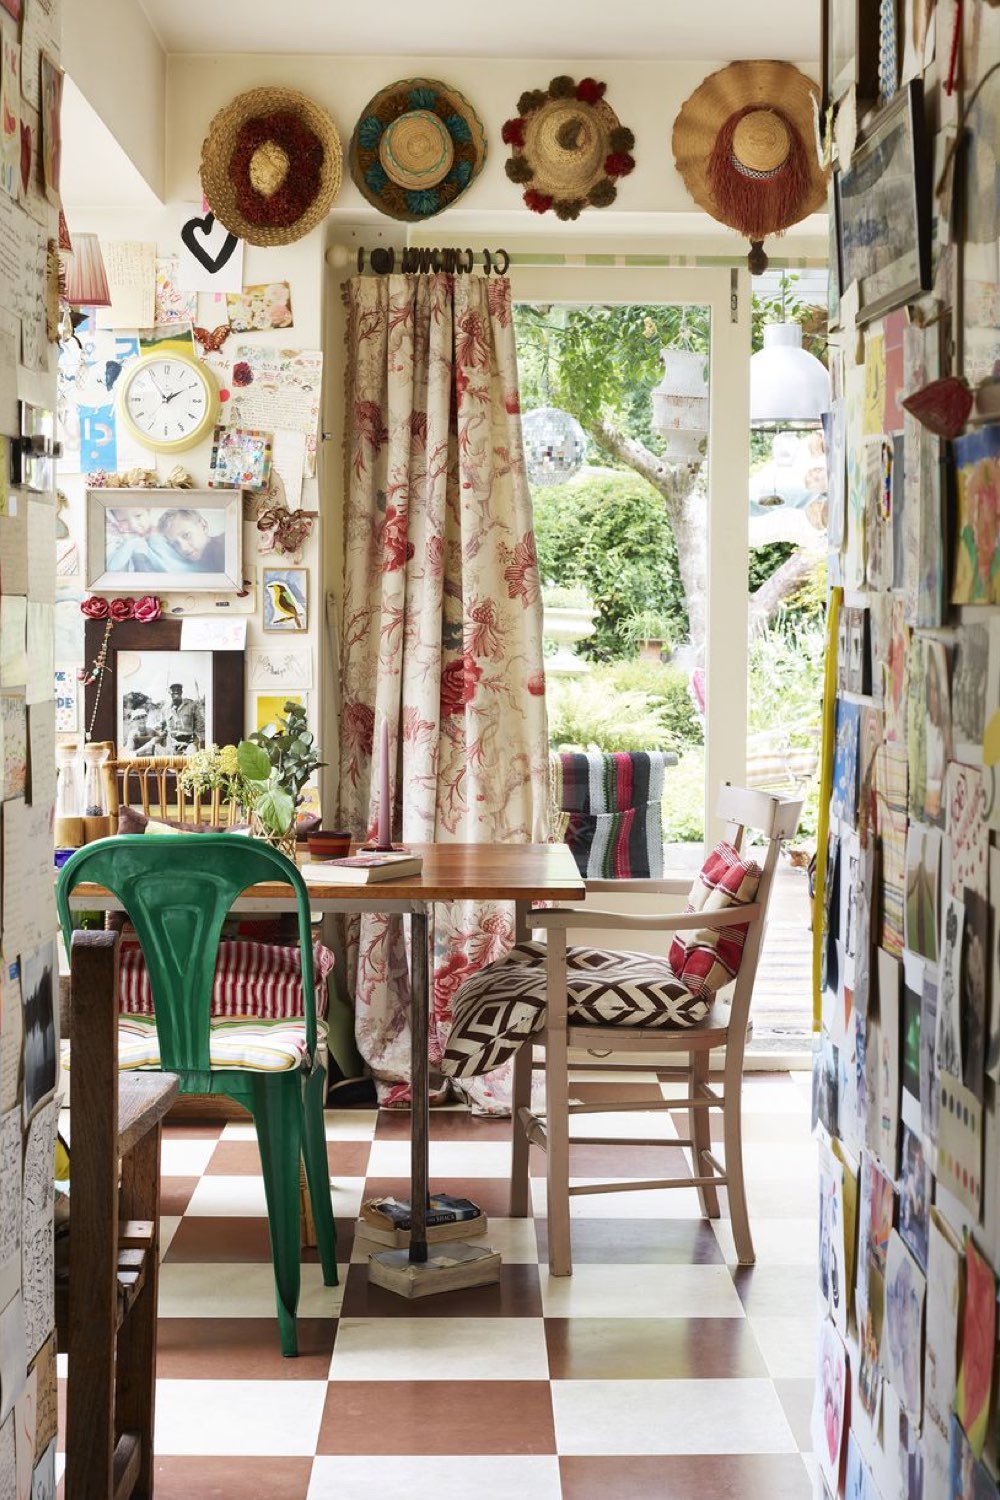 maison anglaise eclectique originale coloree salle à manger esprit cottage éclectique rideaux imprimé floral sol damier brun et écru chaises dépareillées